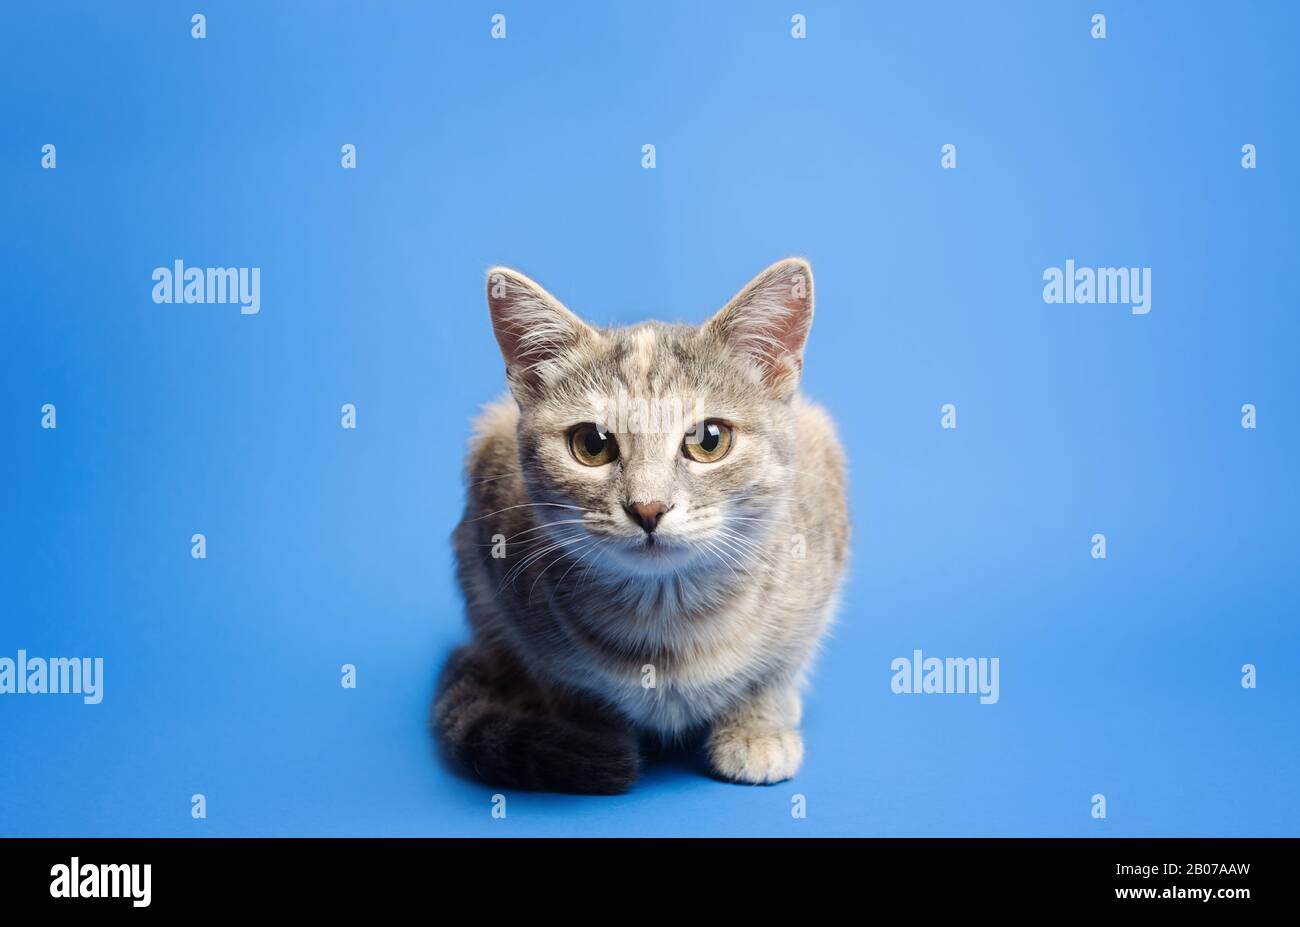 Die niedliche Tabby-Katze sieht kurioserweise auf einem blauen Hintergrund auf die Kamera. Schöne lustige Kätzchen. Die vierte Wand durchbrechen. Neugier und Aufmerksamkeit, Stockfoto